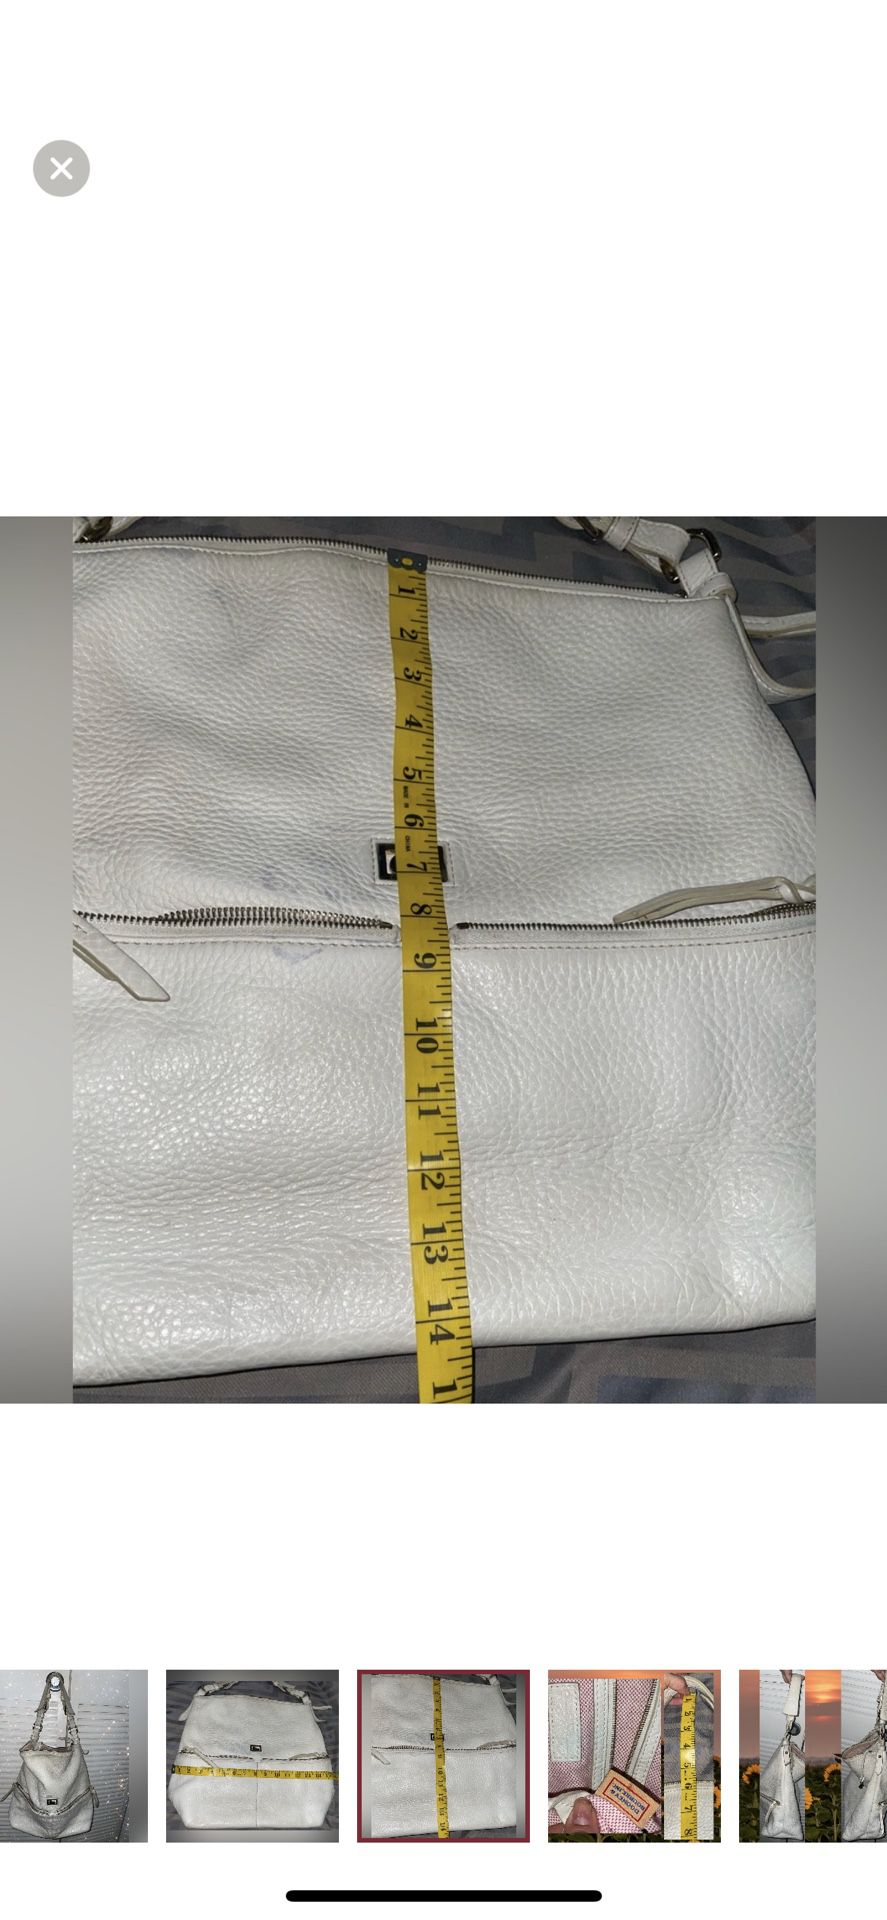 Dooney & Bourke Chelsea Shopper White Pebbled Leather Hobo Tote Bag Women’s